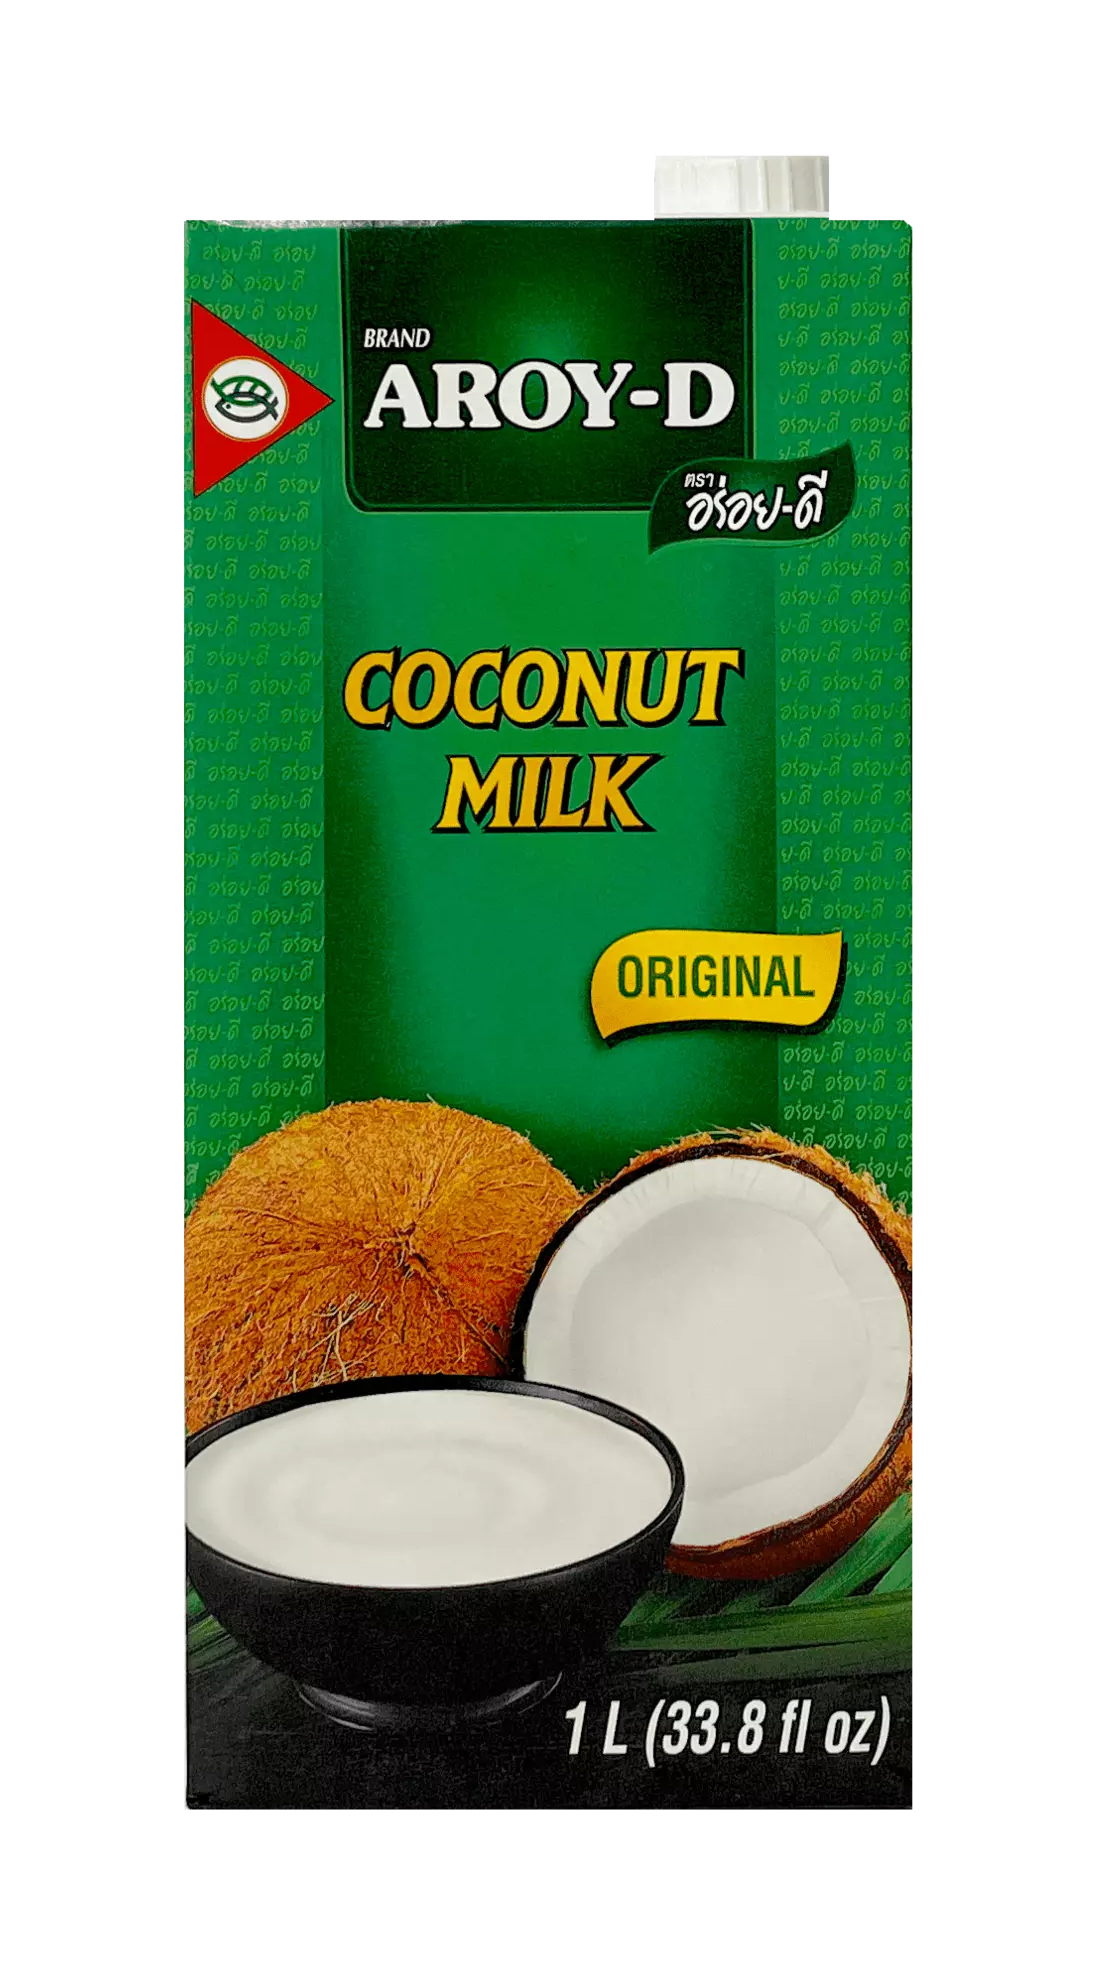 Coconut milk UHT 1000ml Aroy-D Thailand